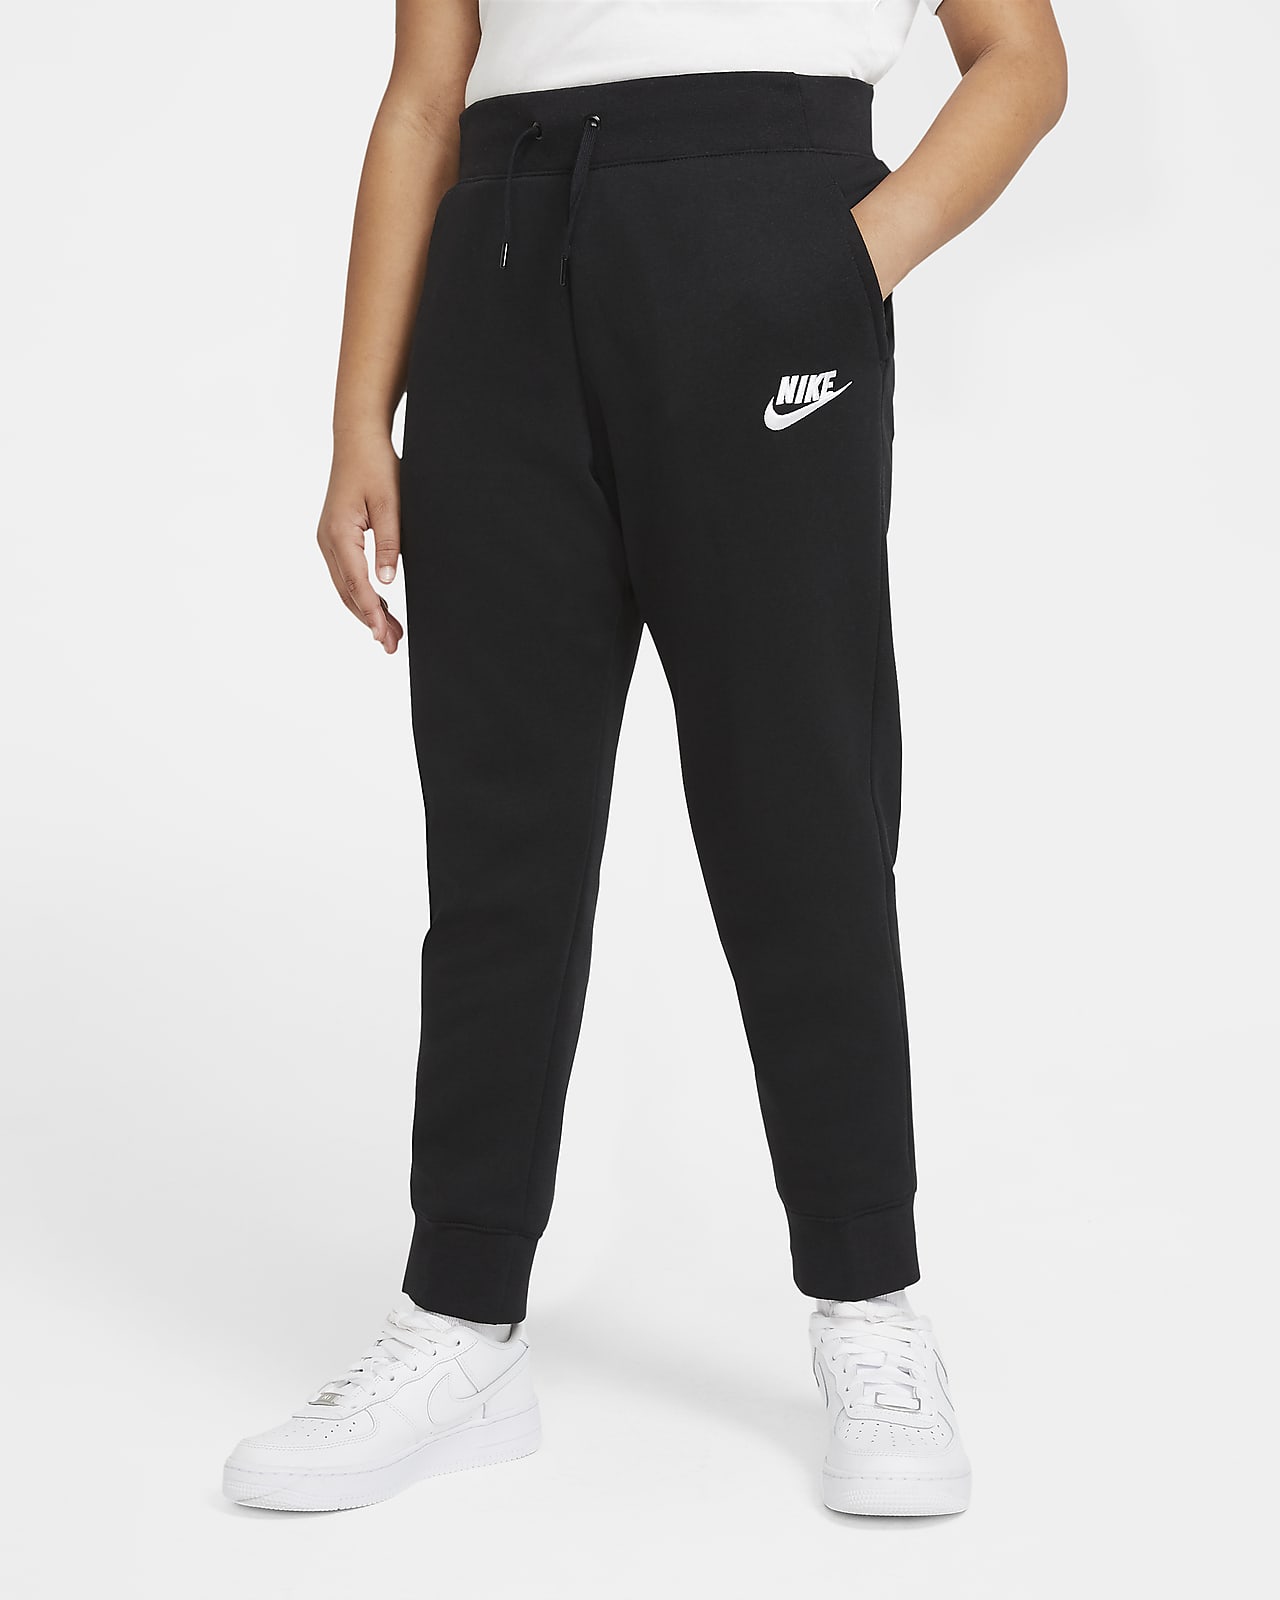 Nike Sportswear Older Kids' (Girls') Trousers (Extended Size)